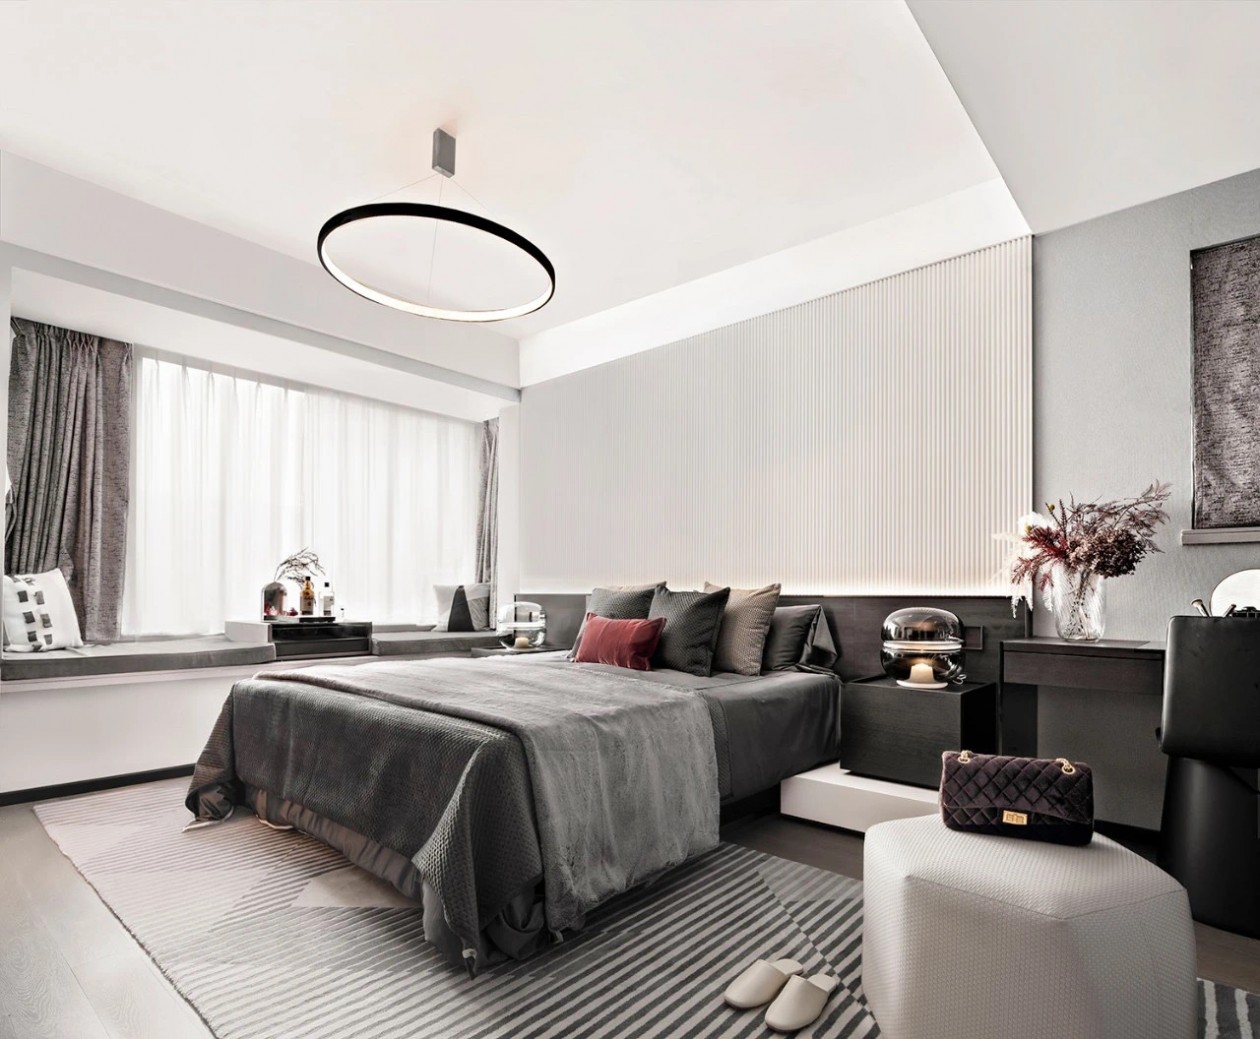 顶面吊灯让人感受时尚的魅力，床品采用深色装饰，释放出主卧空间的品质感。